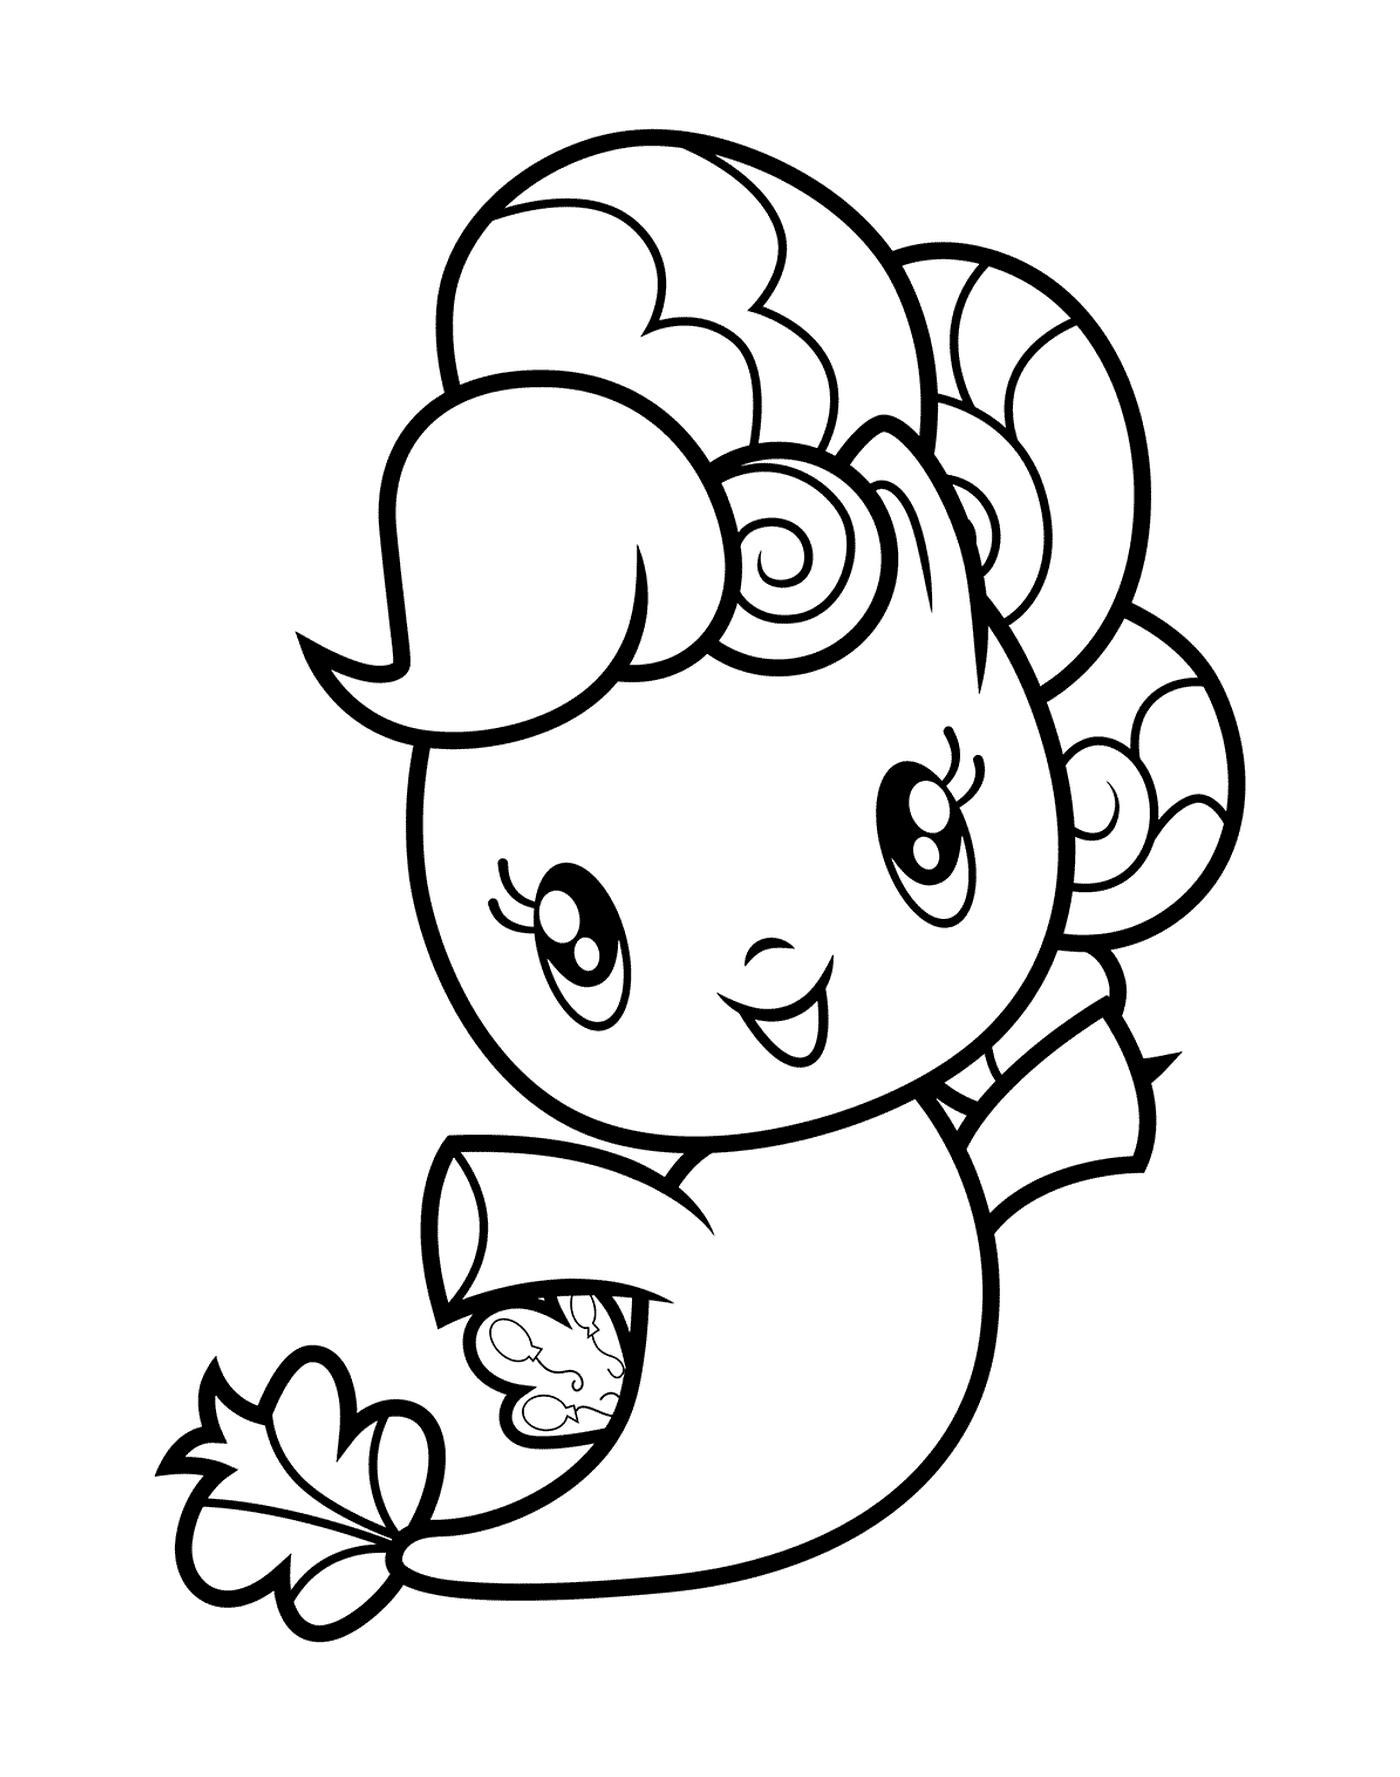  Pinkie Pie Pony de Mer adorável oferecendo uma flor 